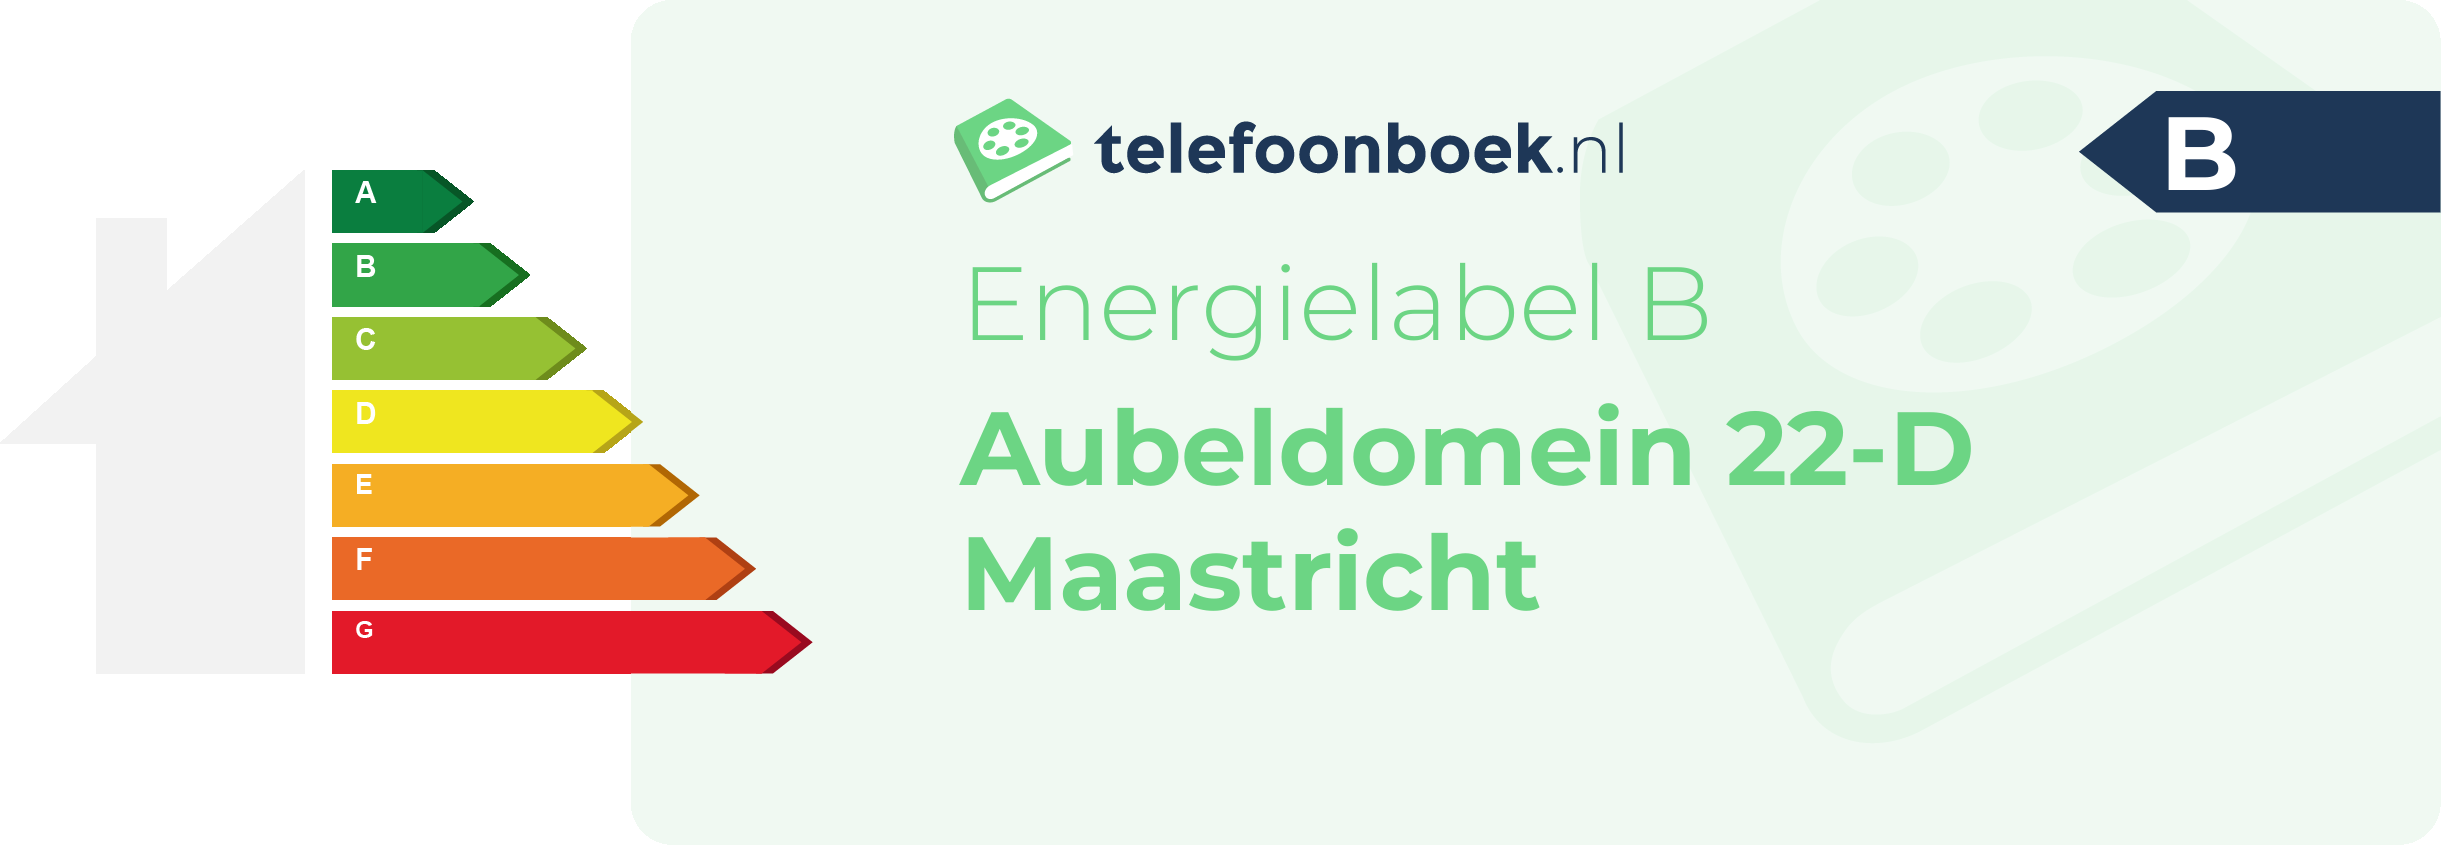 Energielabel Aubeldomein 22-D Maastricht